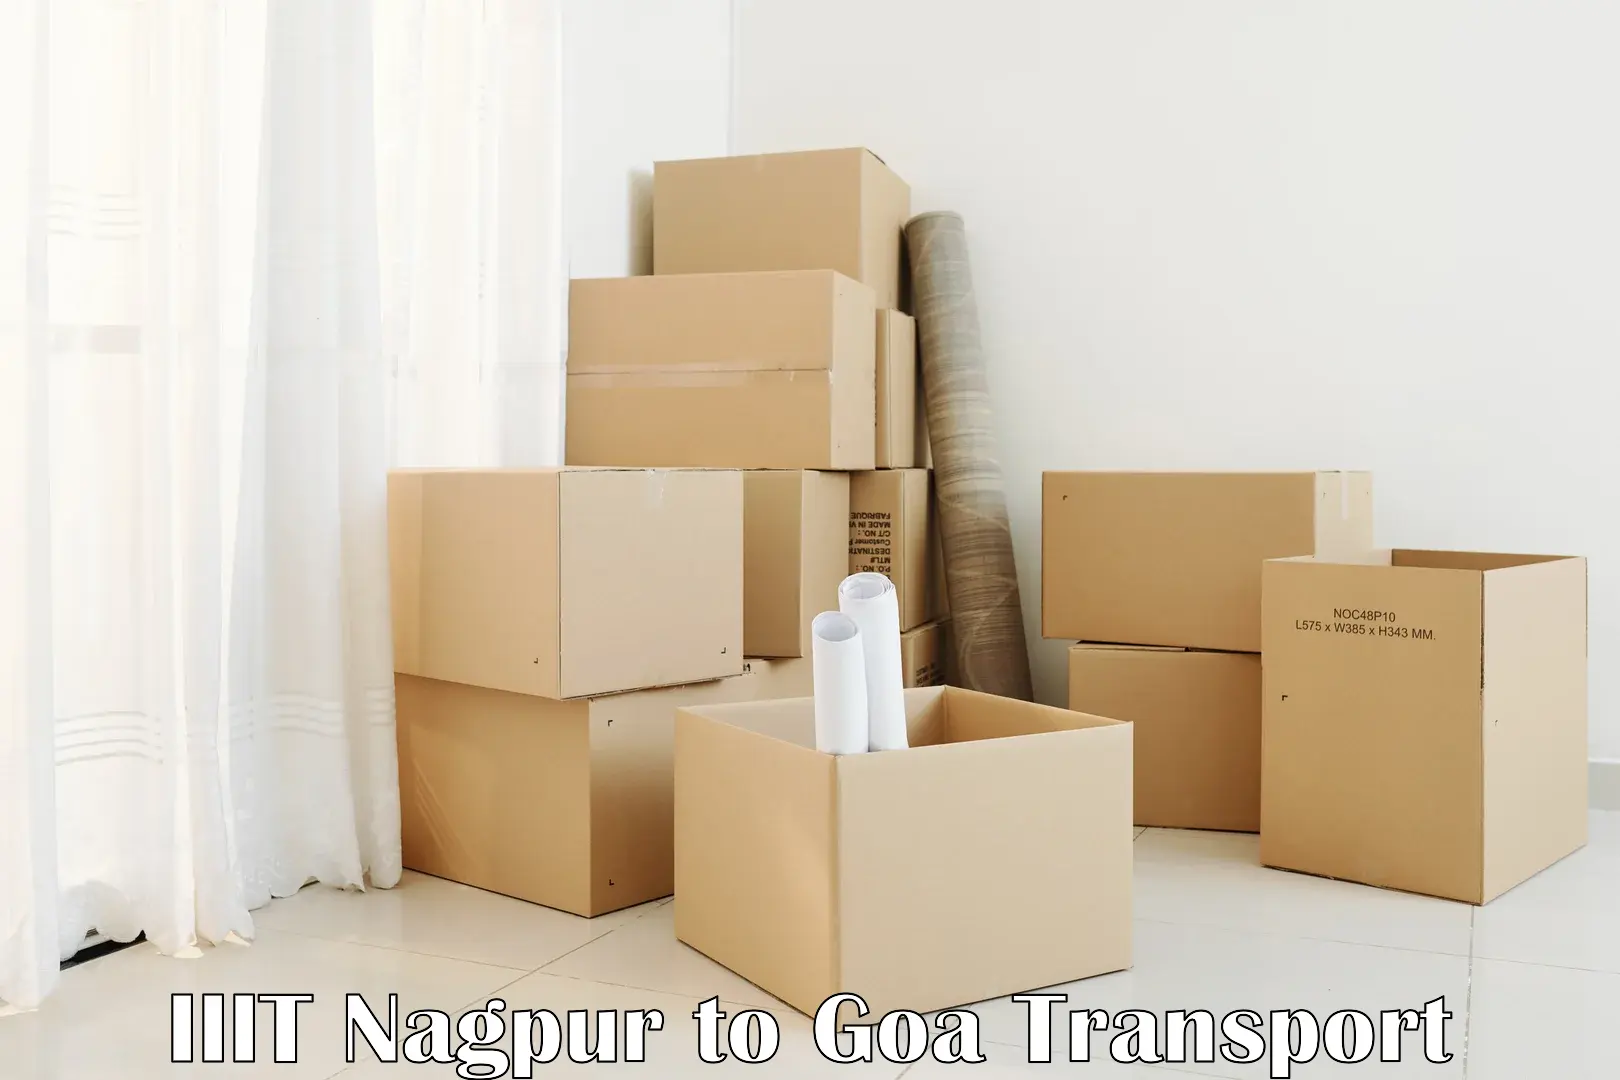 Luggage transport services IIIT Nagpur to Sanvordem